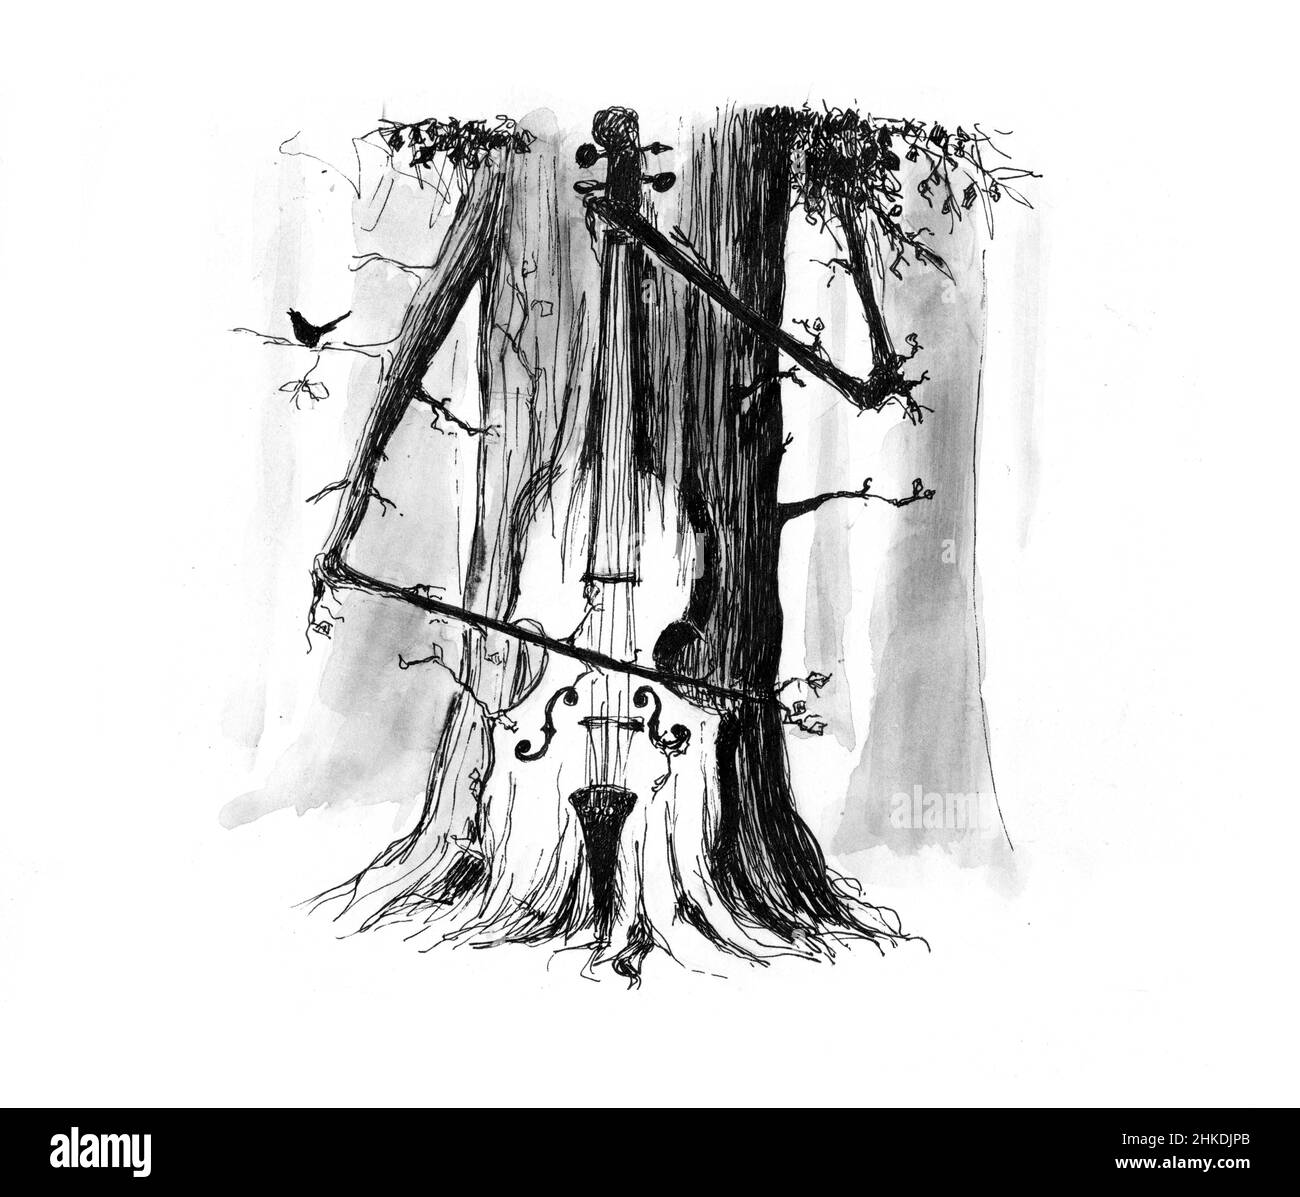 Musica della natura, suoni della natura, musica del rilassamento. Questo disegno lo illustra. Un albero che riproduce il doppio basso. Disegno con penna in bianco e nero. Acquerello Foto Stock